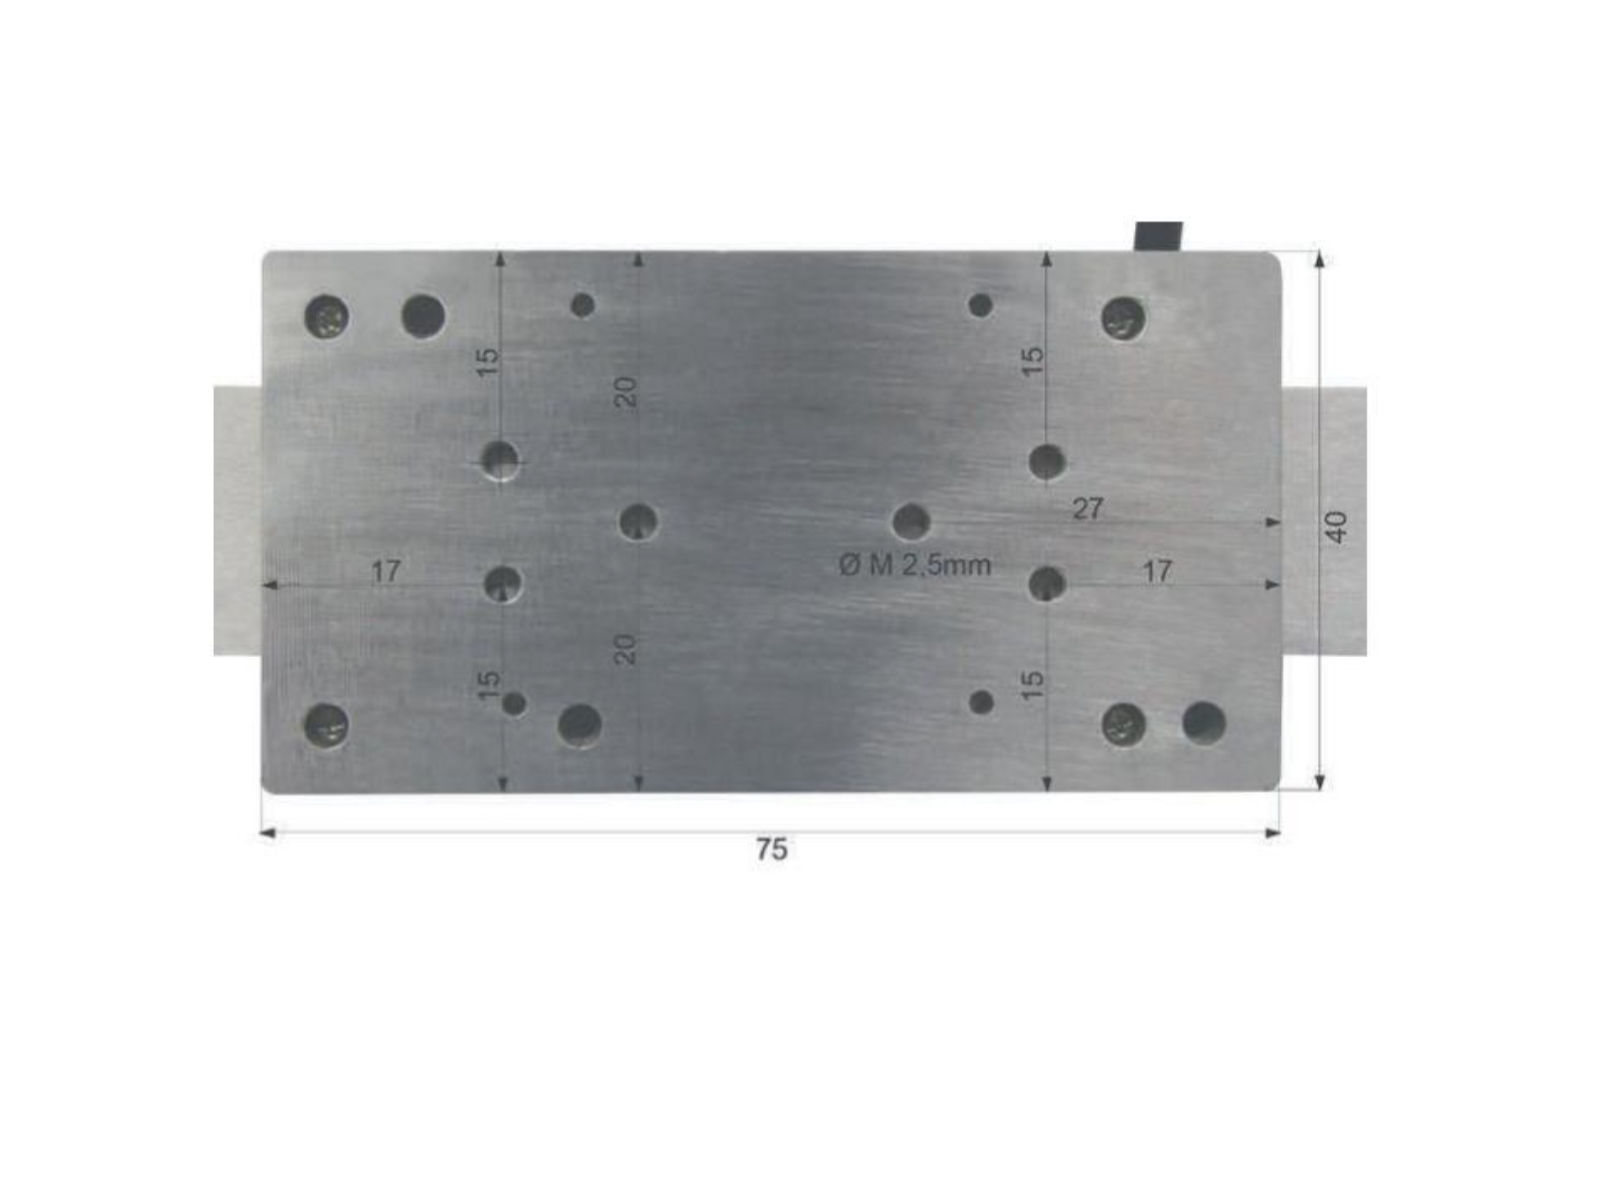 Digitaler Anbaumessschieber vertikal - mit Bluetooth® 300 mm / 12 inch